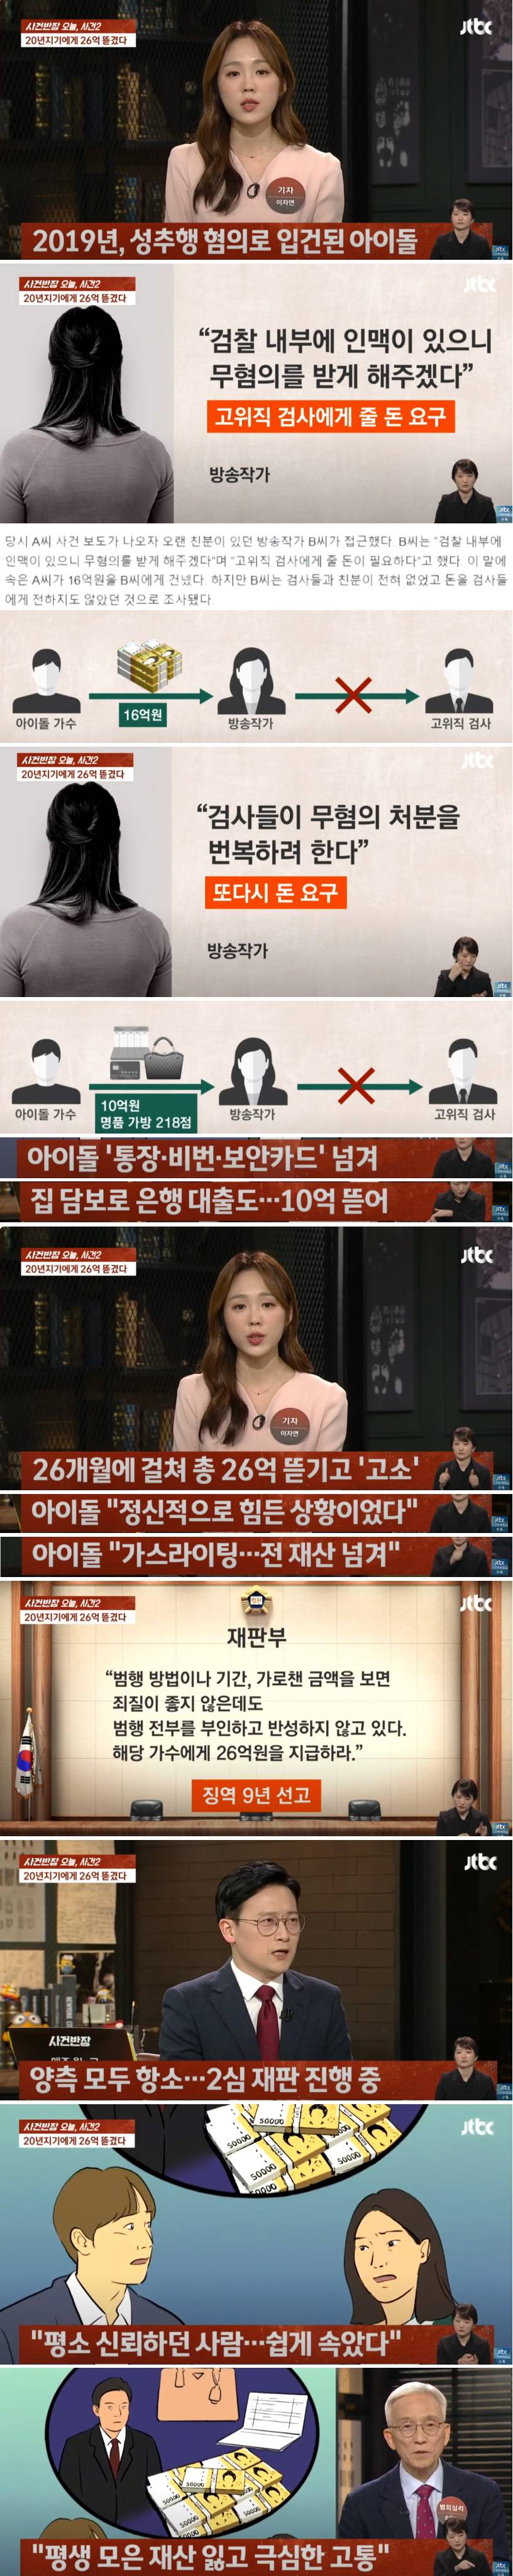 방송작가에 26억 뜯긴 유명 아이돌